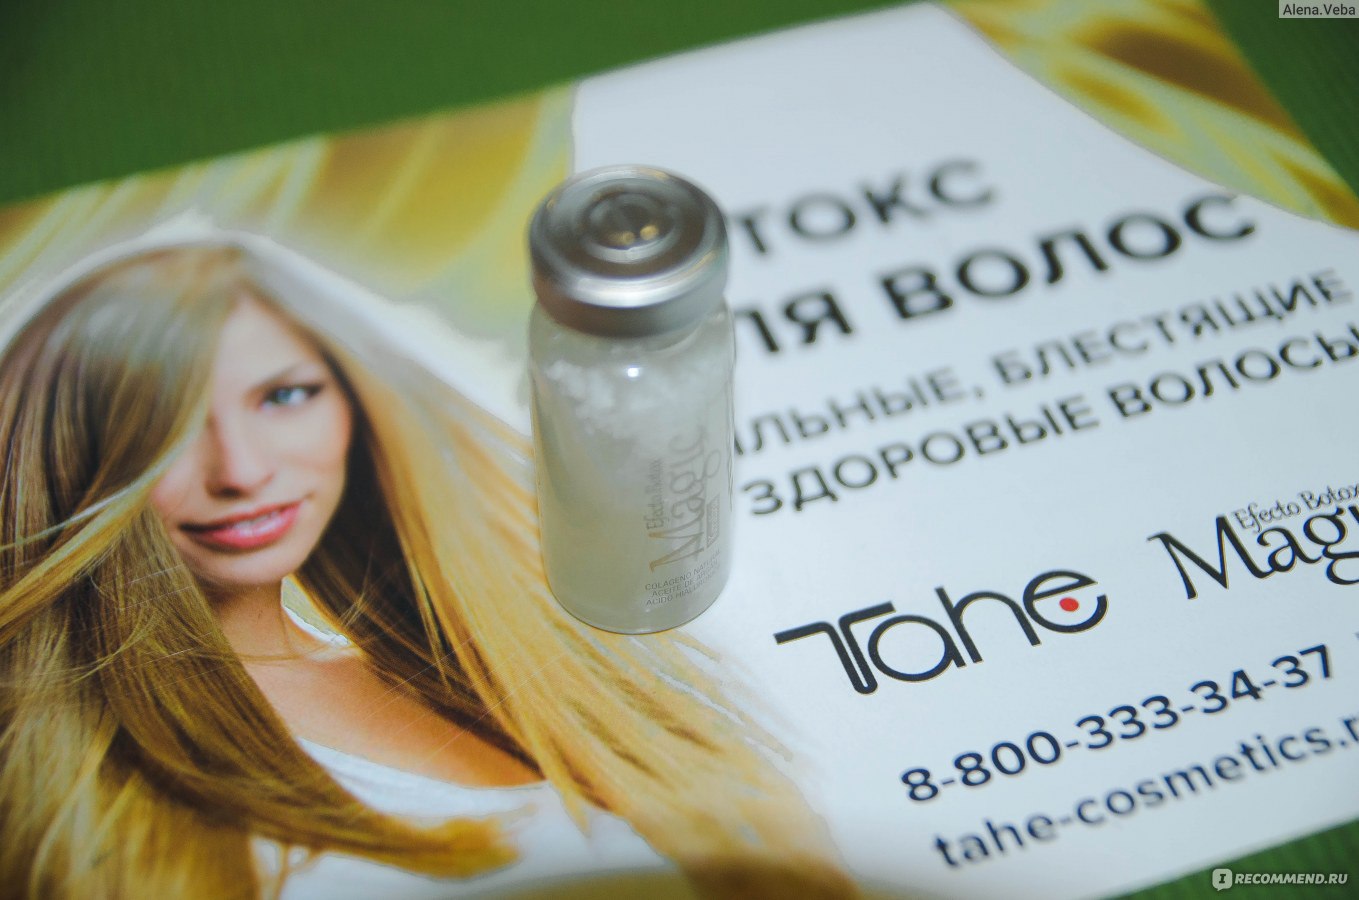 Ботокс для волос tahe magic efecto botox результаты применения, фото до и после, отзывы